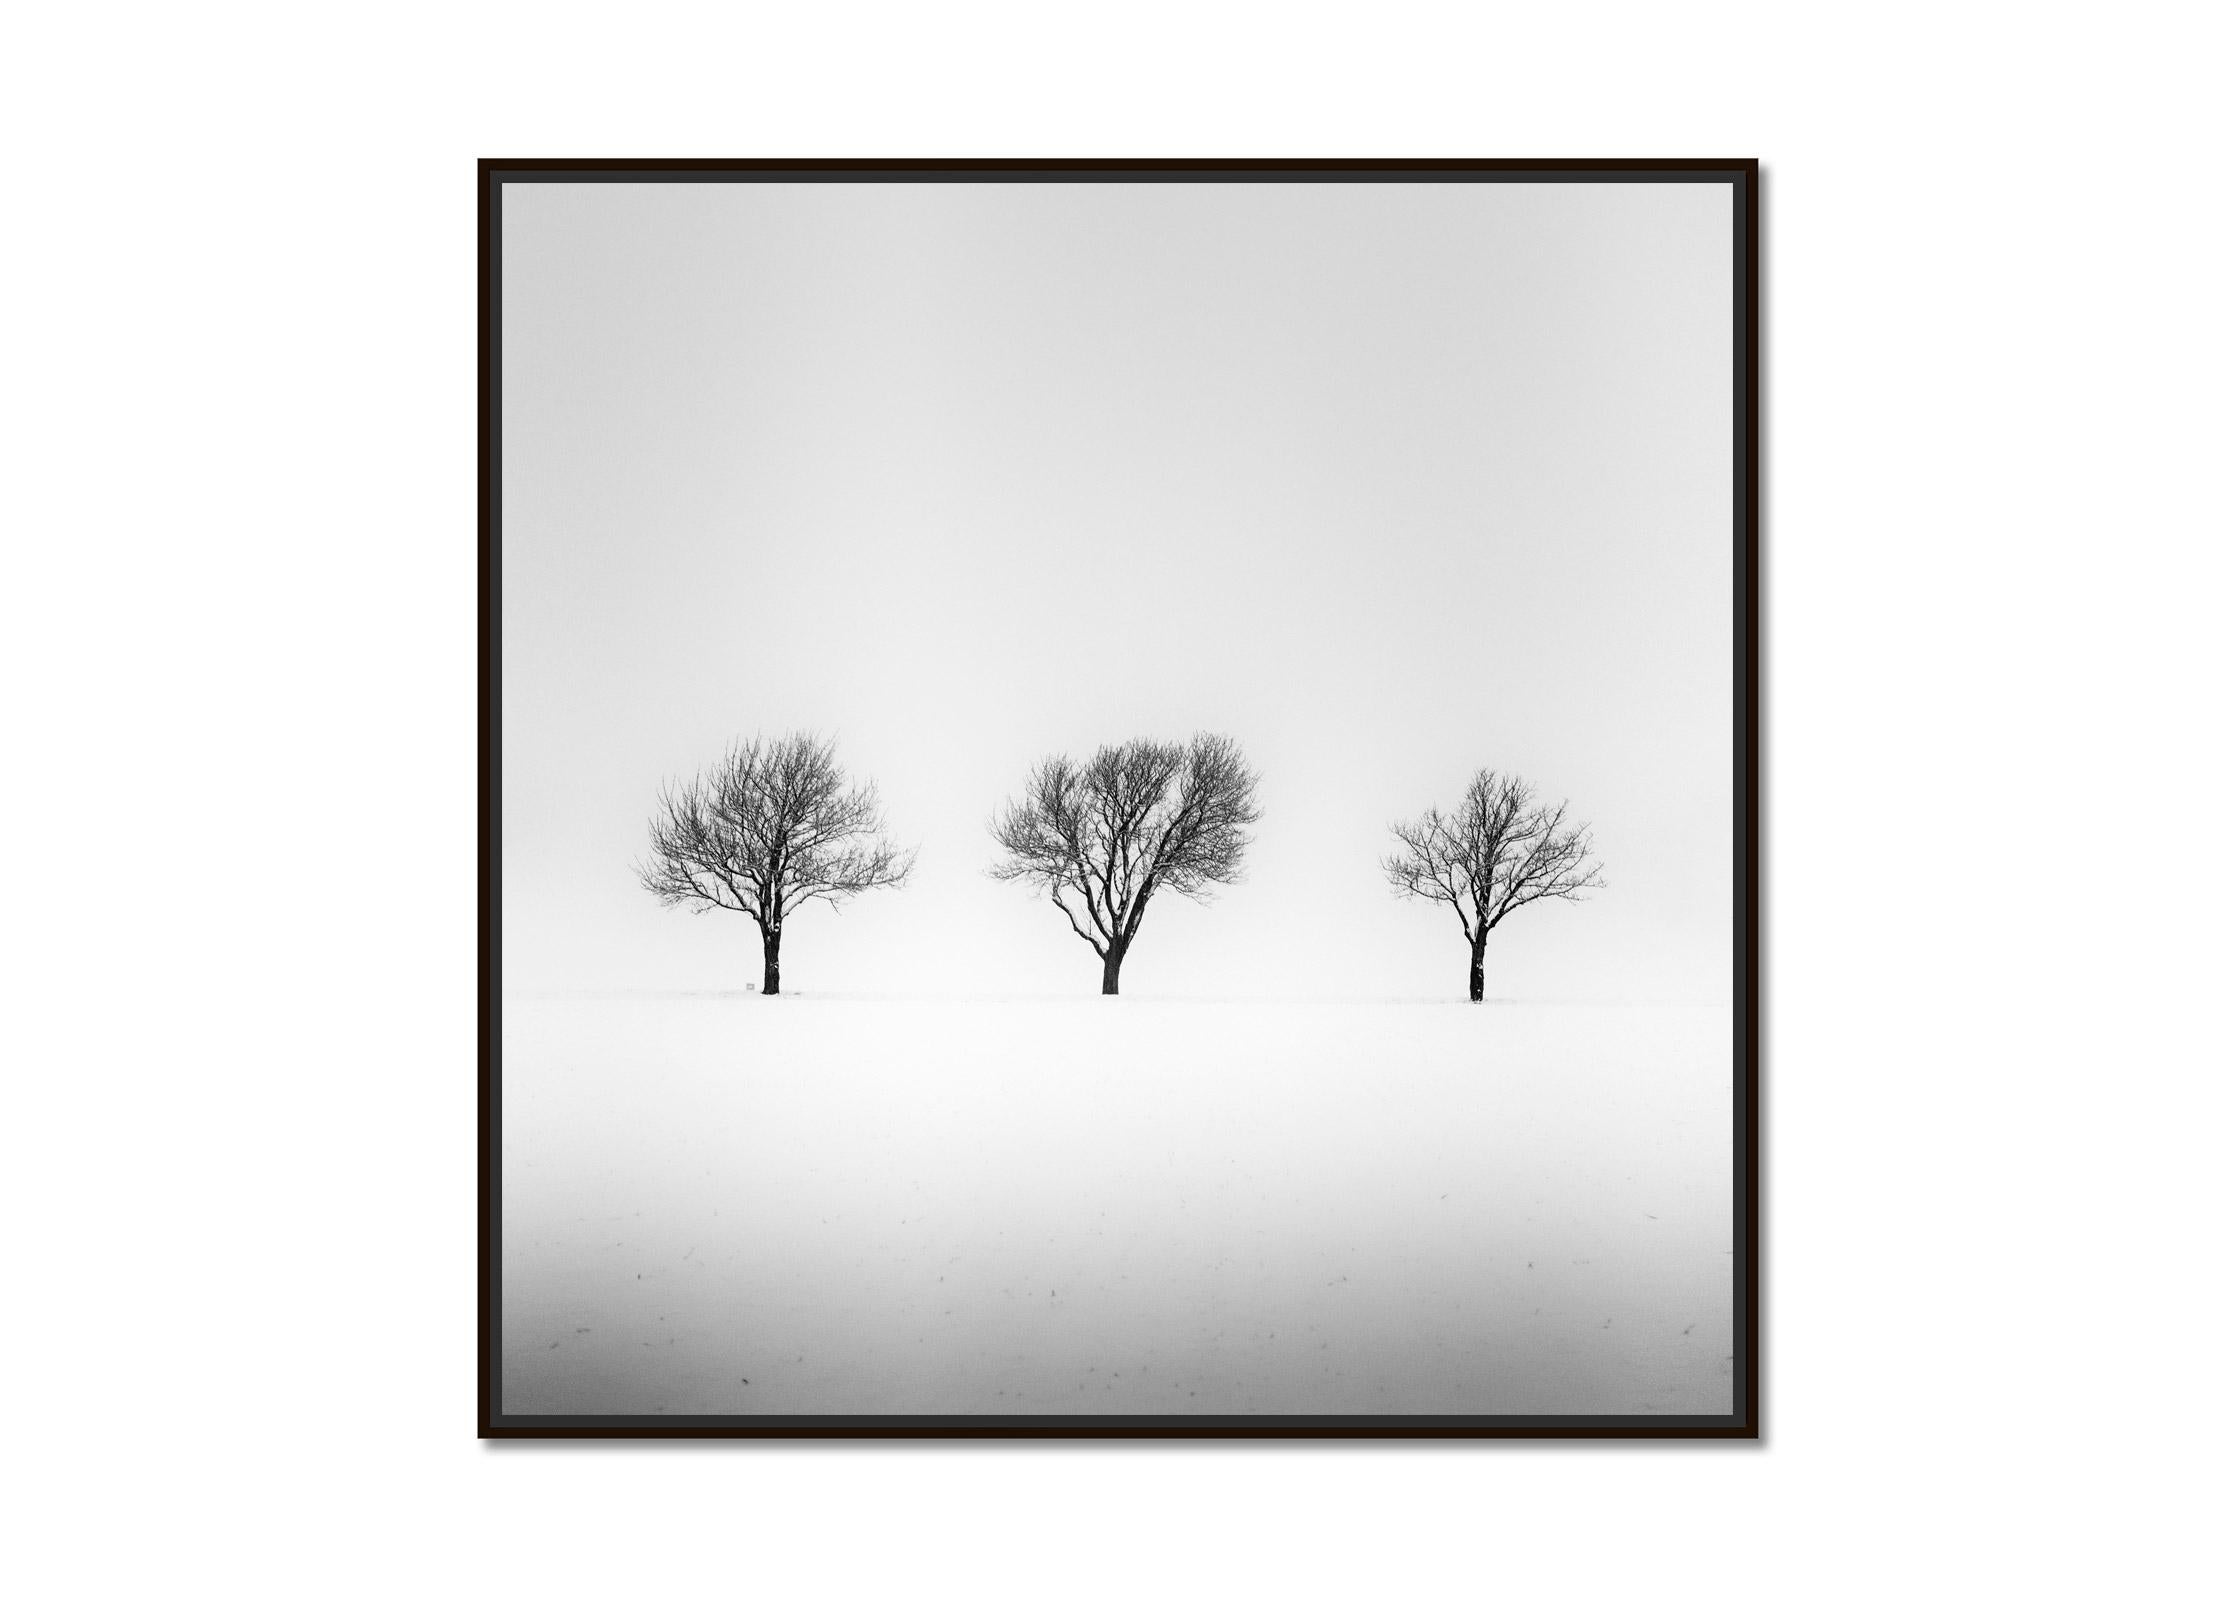 Arbres dans un champ enneigé, terre d'hiver, photographie en noir et blanc, art, paysage - Photograph de Gerald Berghammer